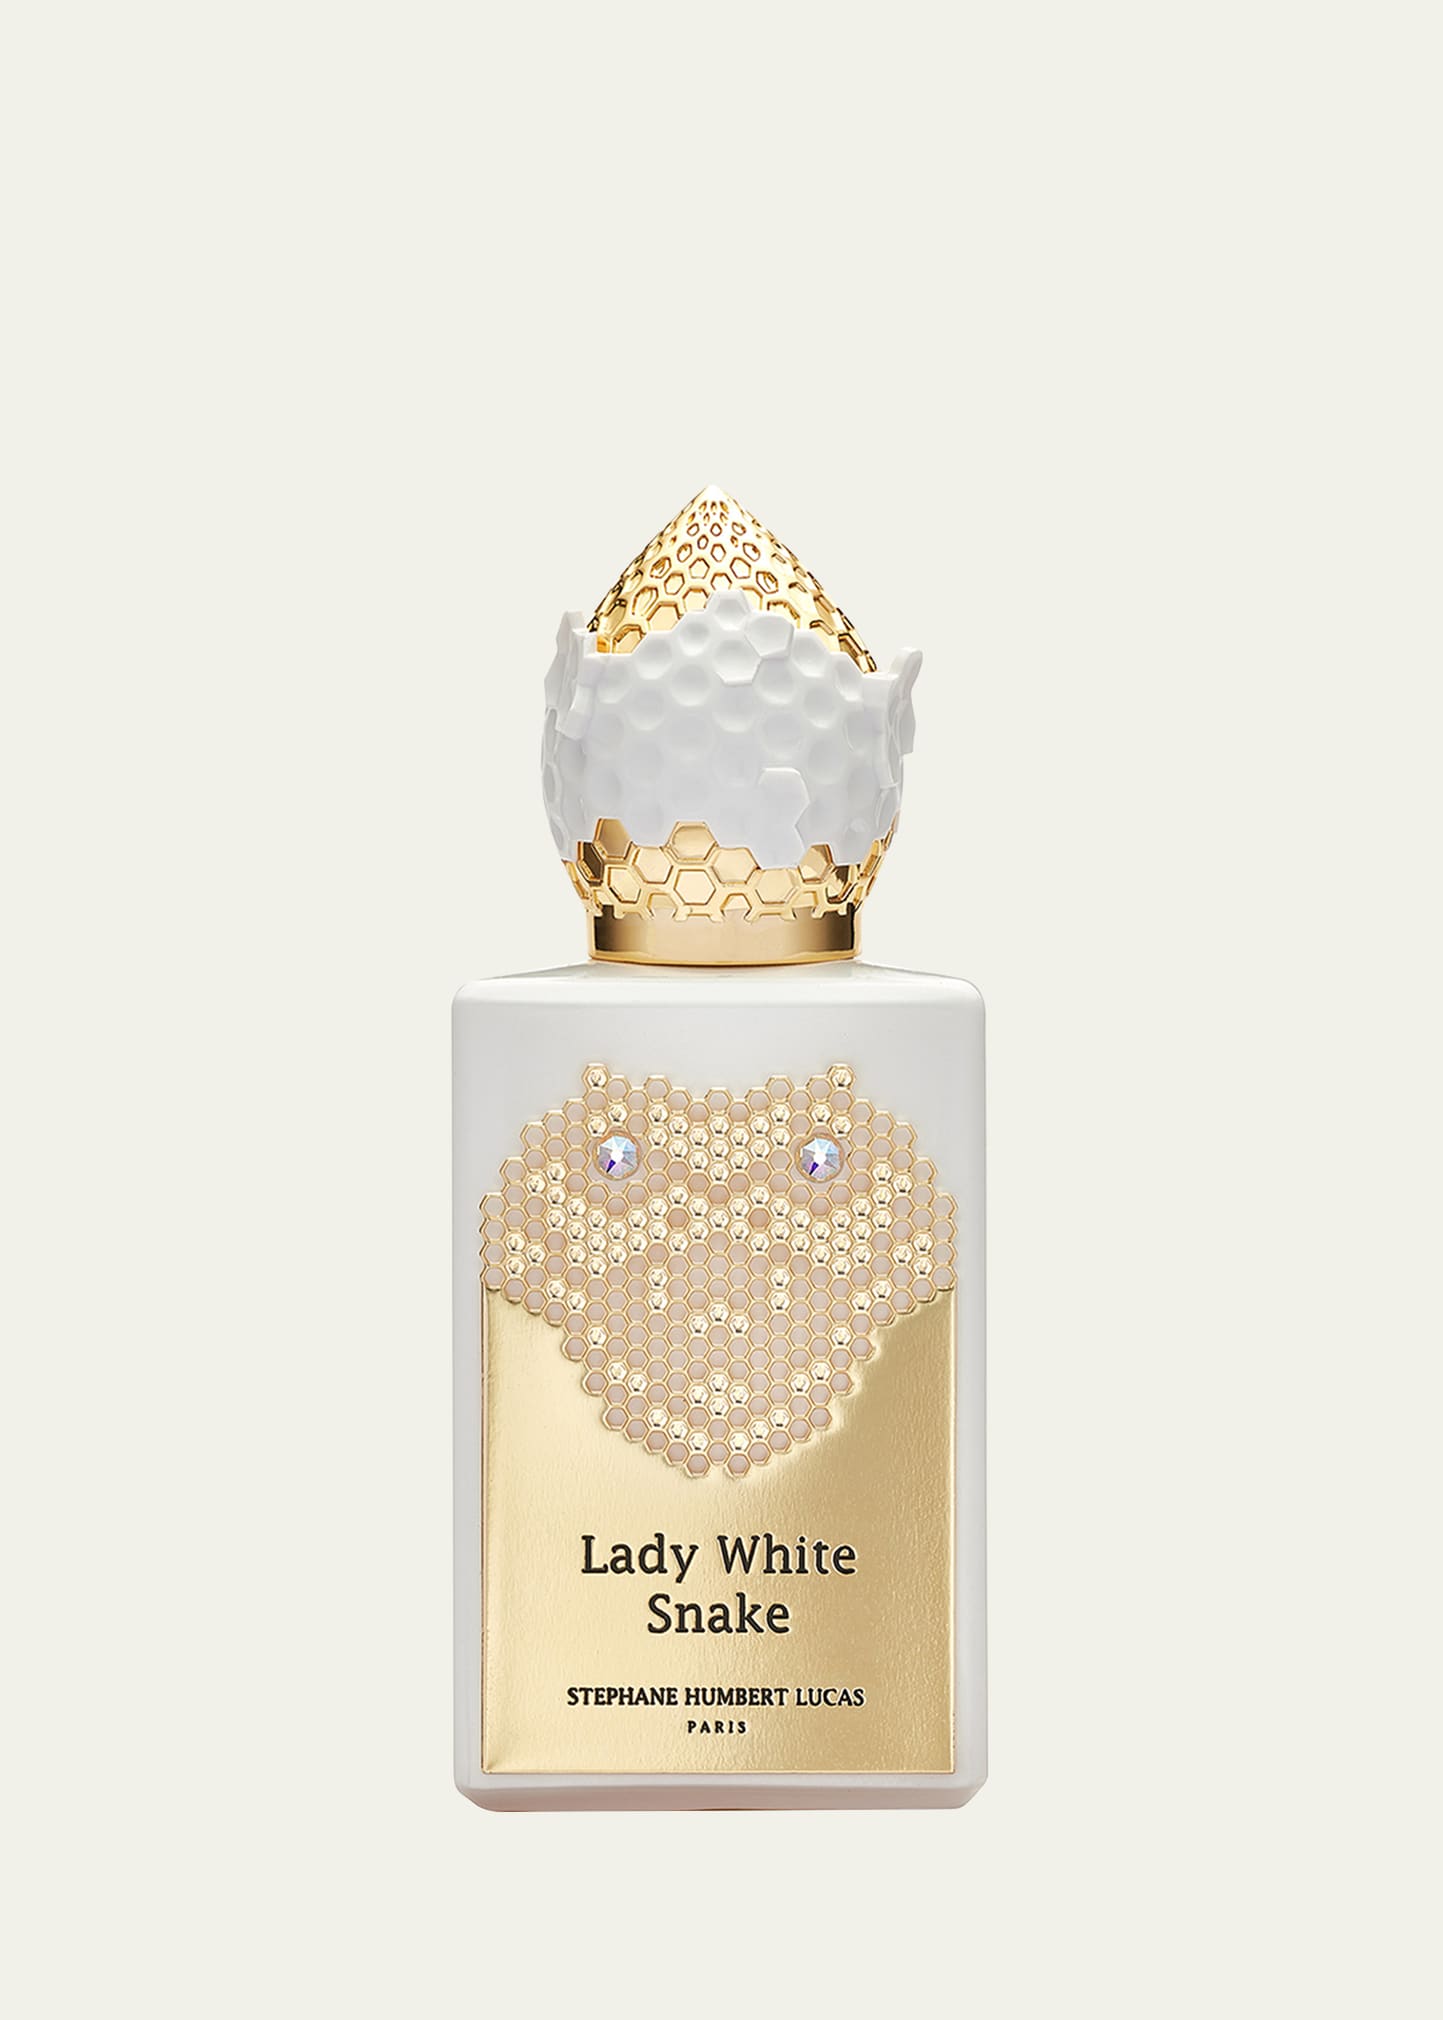 Lady White Snake Eau de Parfum, 1.7 oz.